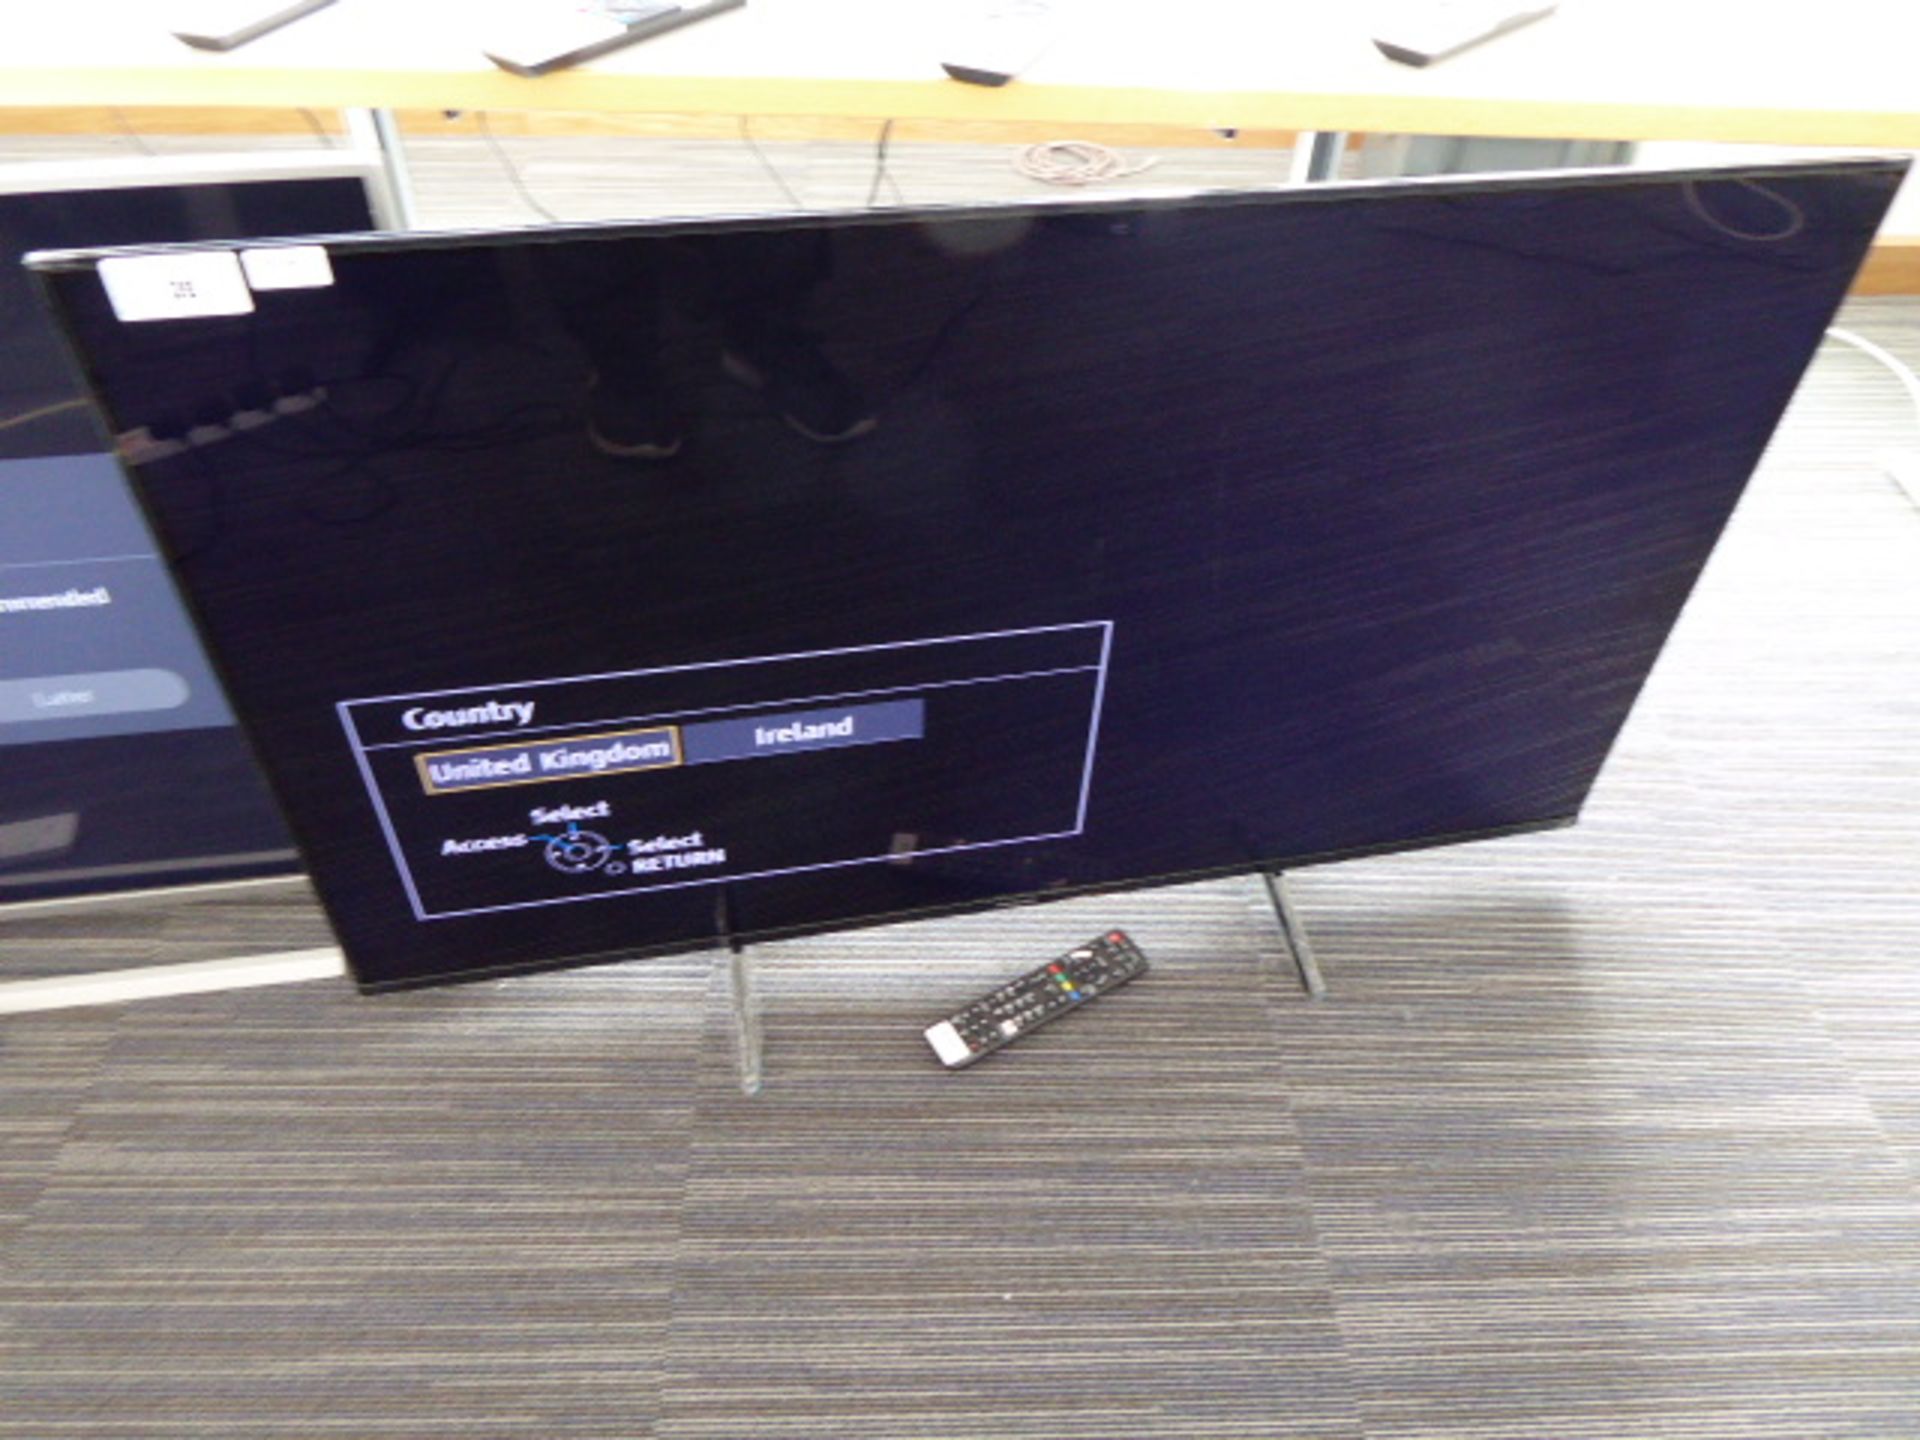 (R164) Panasonic 50'' TV model no TX-50GX700B